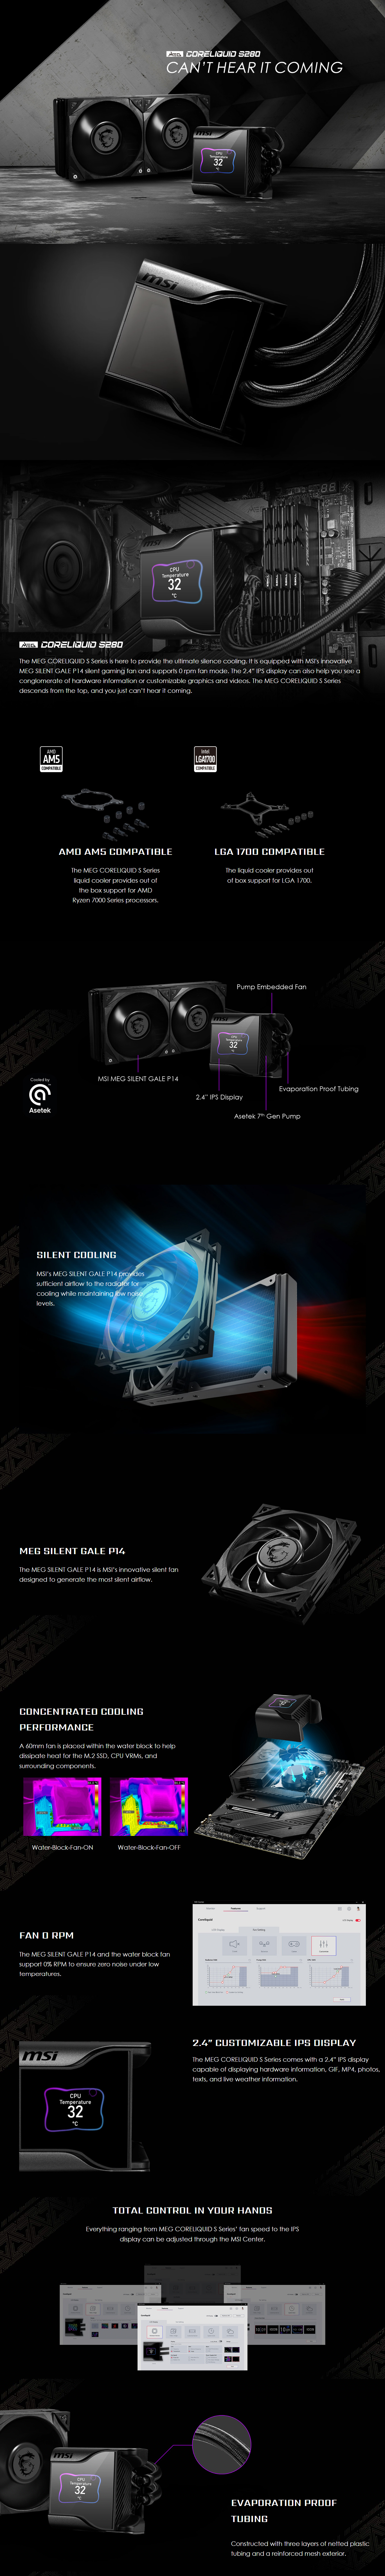 CPU-Cooling-MSI-MEG-CoreLiquid-S280-280mm-AIO-CPU-Cooler-1